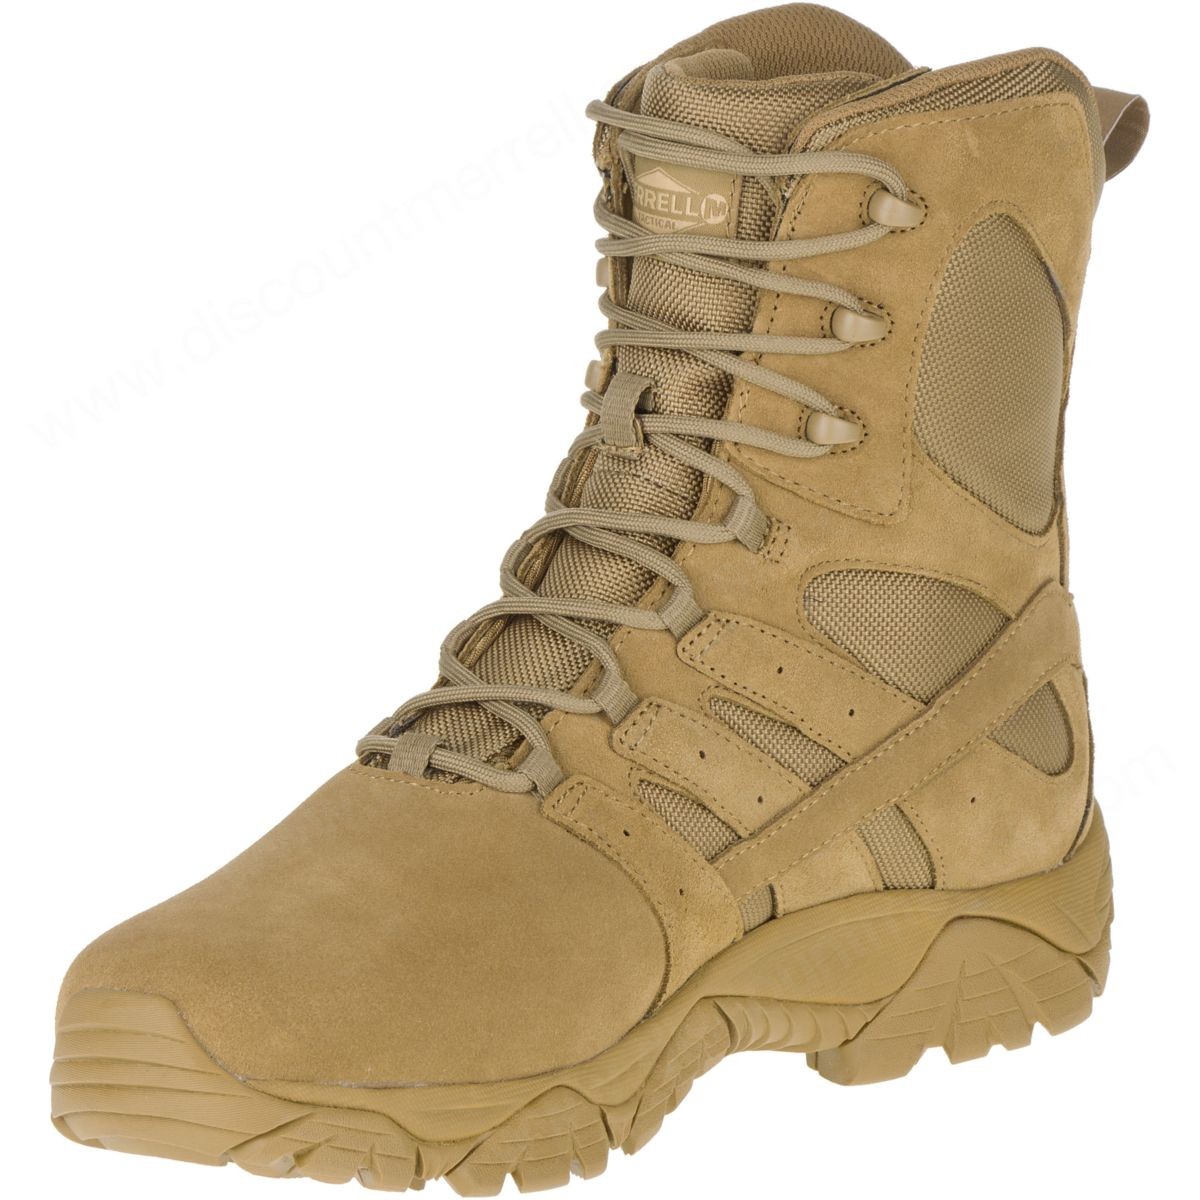 Merrell Mens's Moab " Tactical Defense Boot Coyote - -5